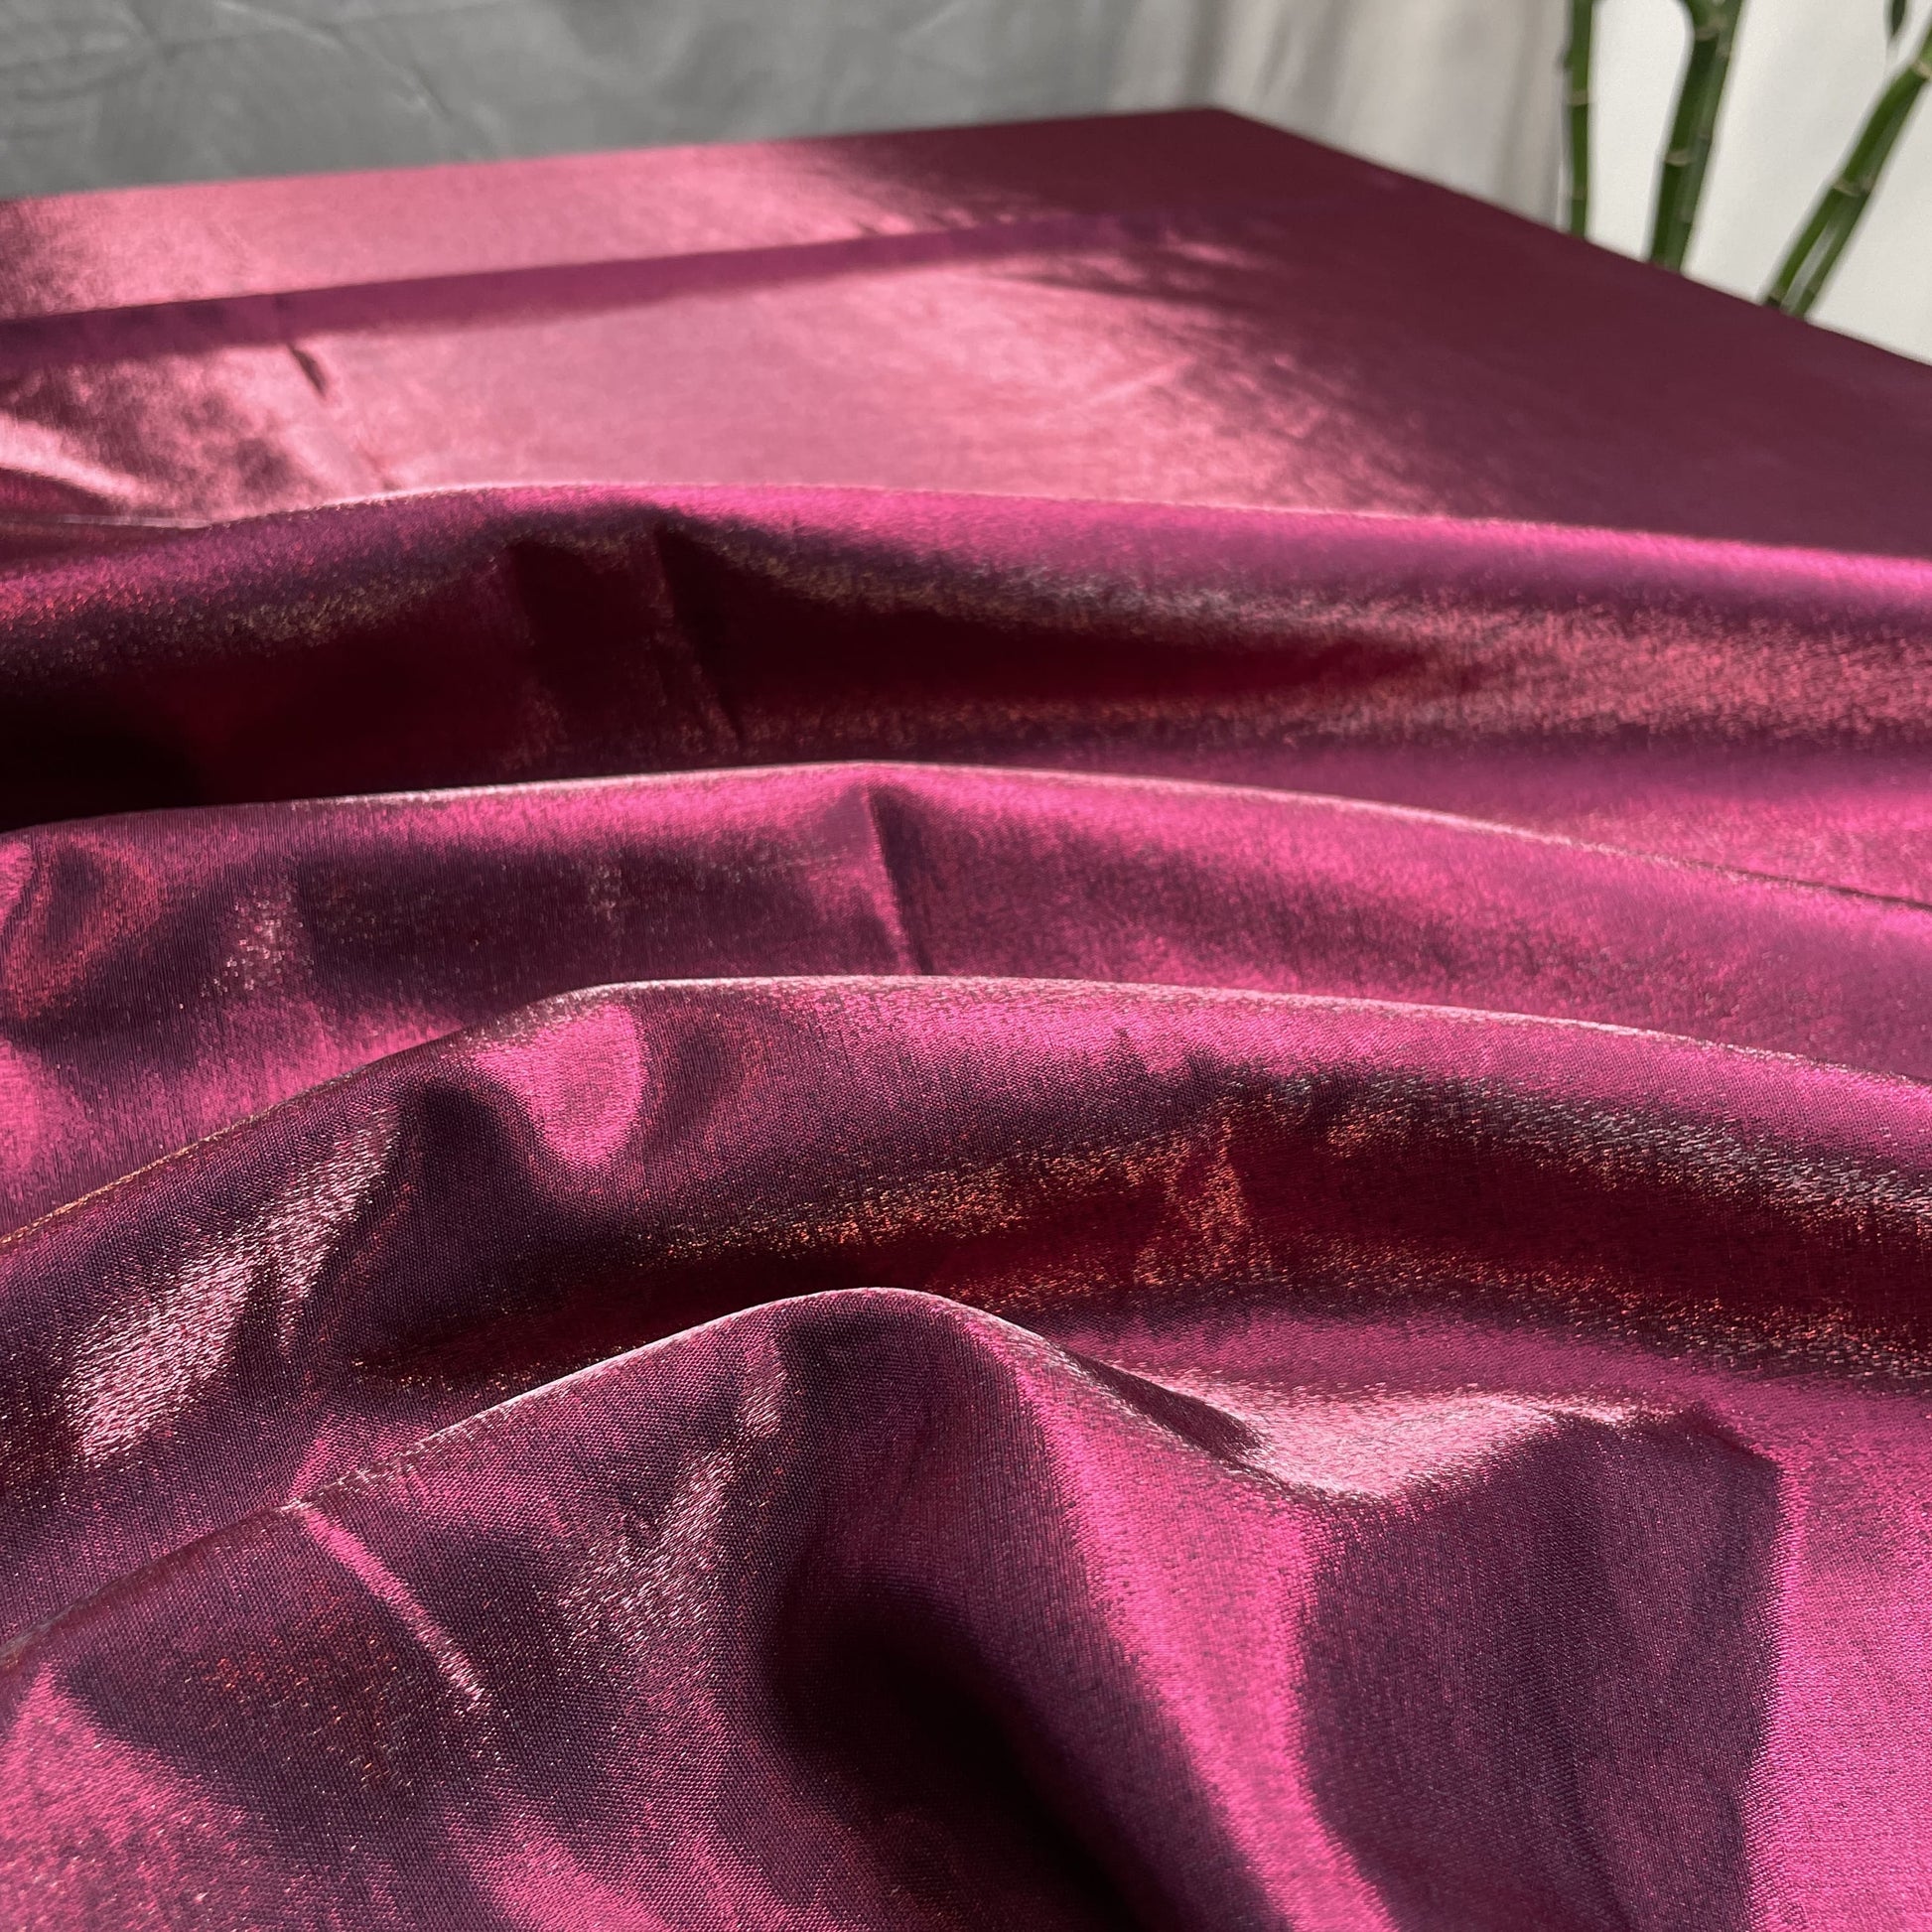 Premium Megenta Pink Volvo Satin Fabric